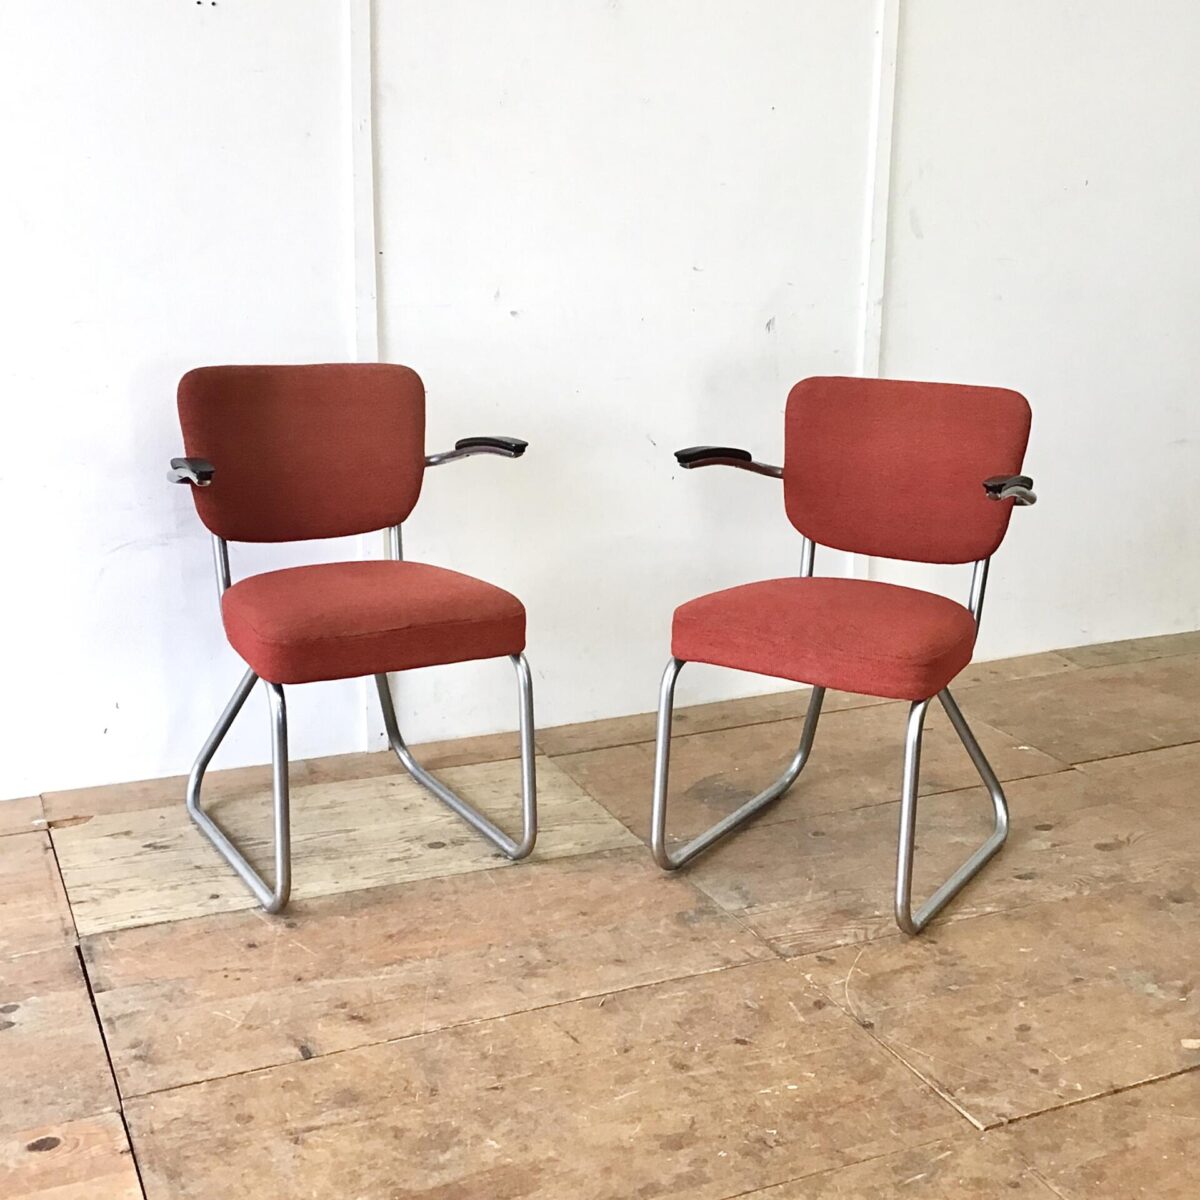 Zwei schöne Stühle von Jan Schröfer für Ahrend de Cirkel. Sitzhöhe ca. 47cm. Bequeme Armlehnstühle im Stile der Bauhaus Stahlrohrmöbel. Passend im Wohnzimmer, als Bürostuhl oder auch am Esstisch. In Gepflegtem gebrauchtem Vintage Zustand. 